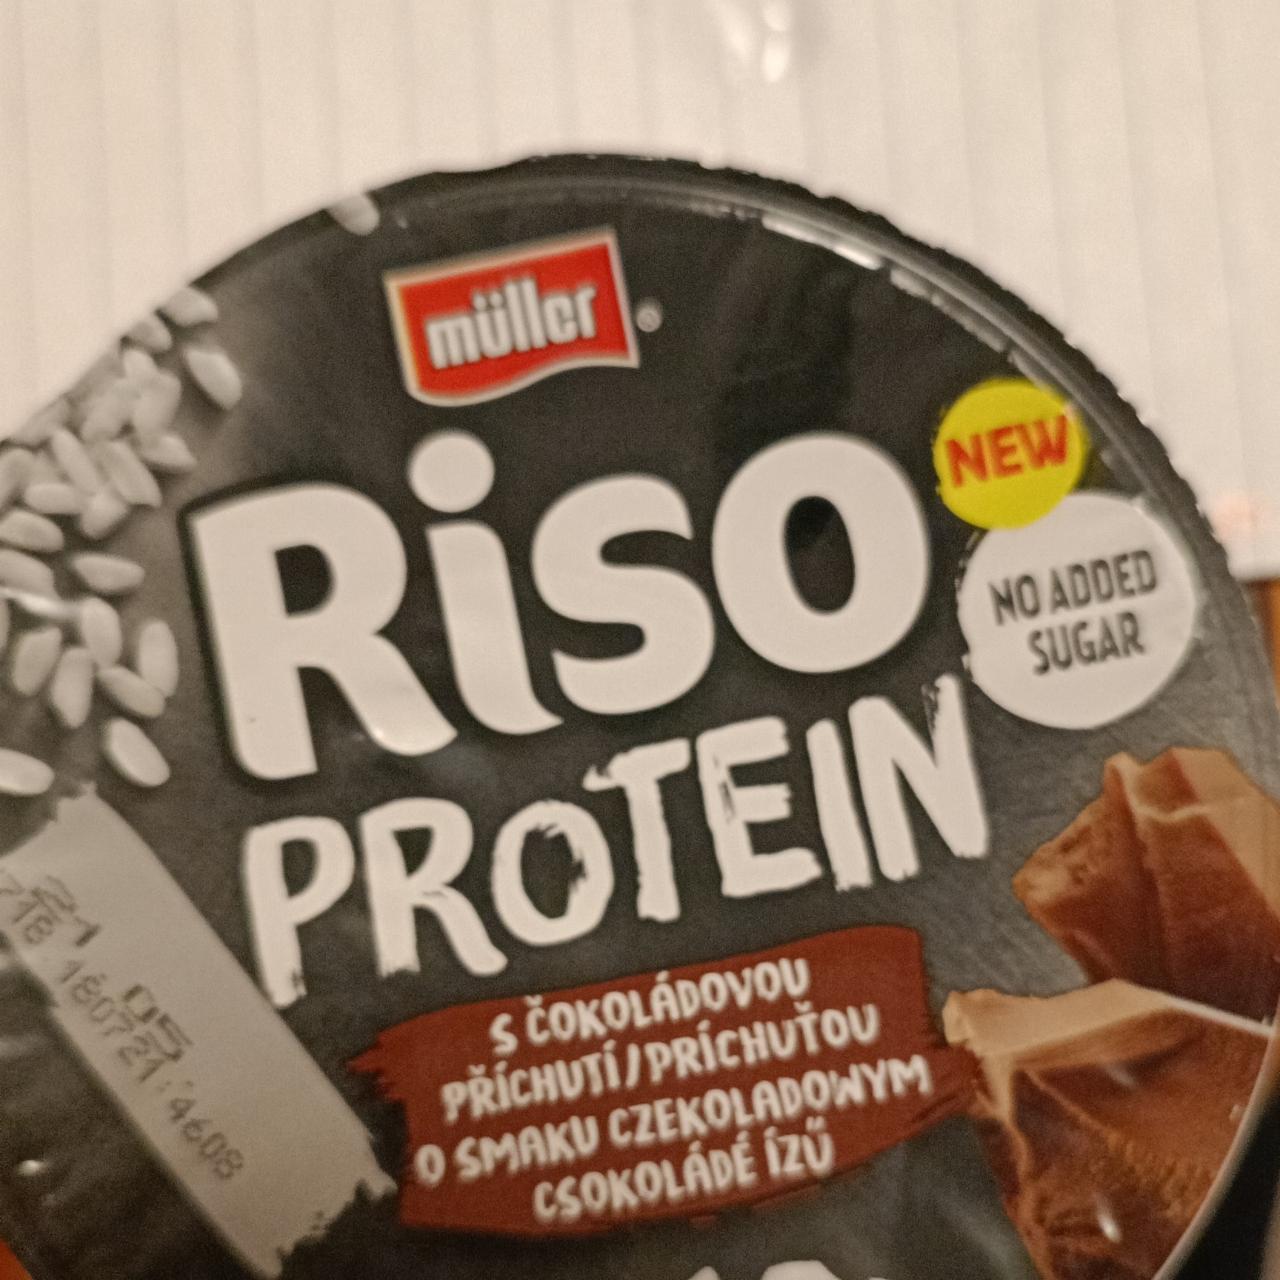 Фото - протеиновая рисовая каша с шоколадом Riso protein Müller